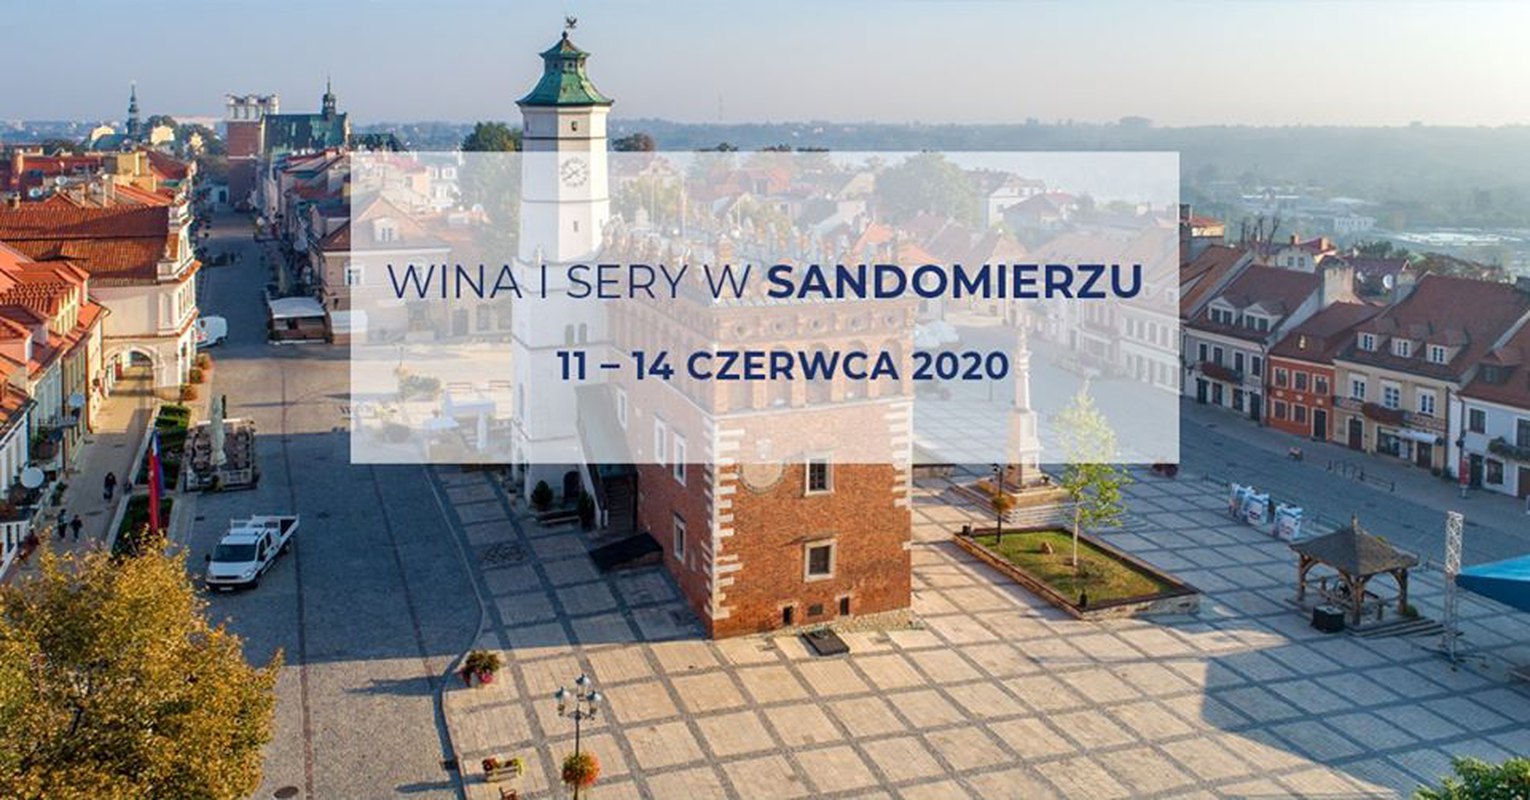 Wina i sery w Sandomierzu